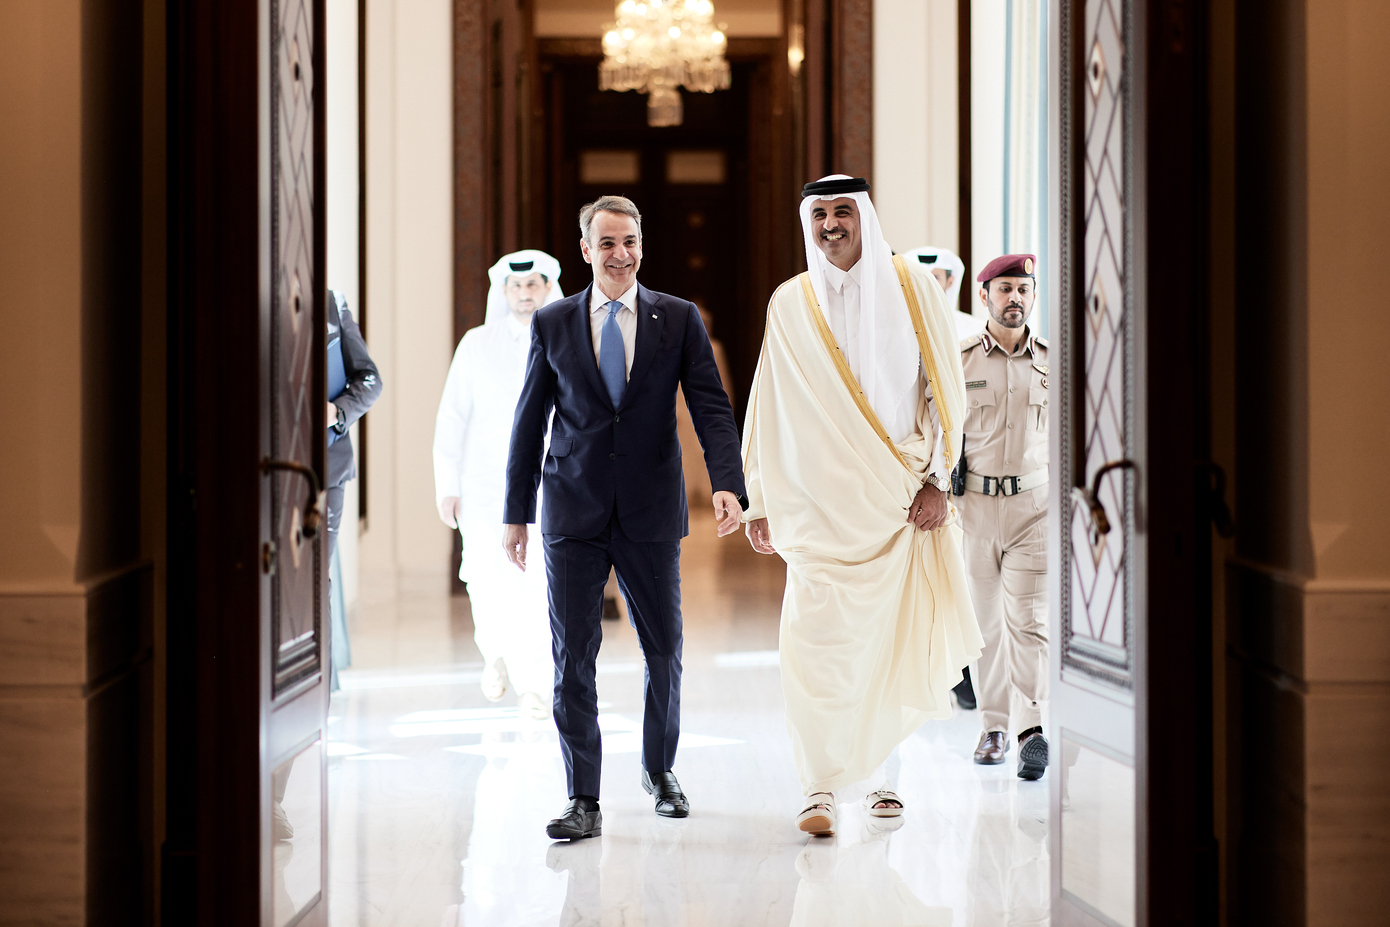 Επενδύσεις και ενέργεια στη συνάντηση του Κυριάκου Μητσοτάκη με τον Εμίρη του Κατάρ – Συνεχίζονται οι πυρετώδεις προεκλογικοί ρυθμοί